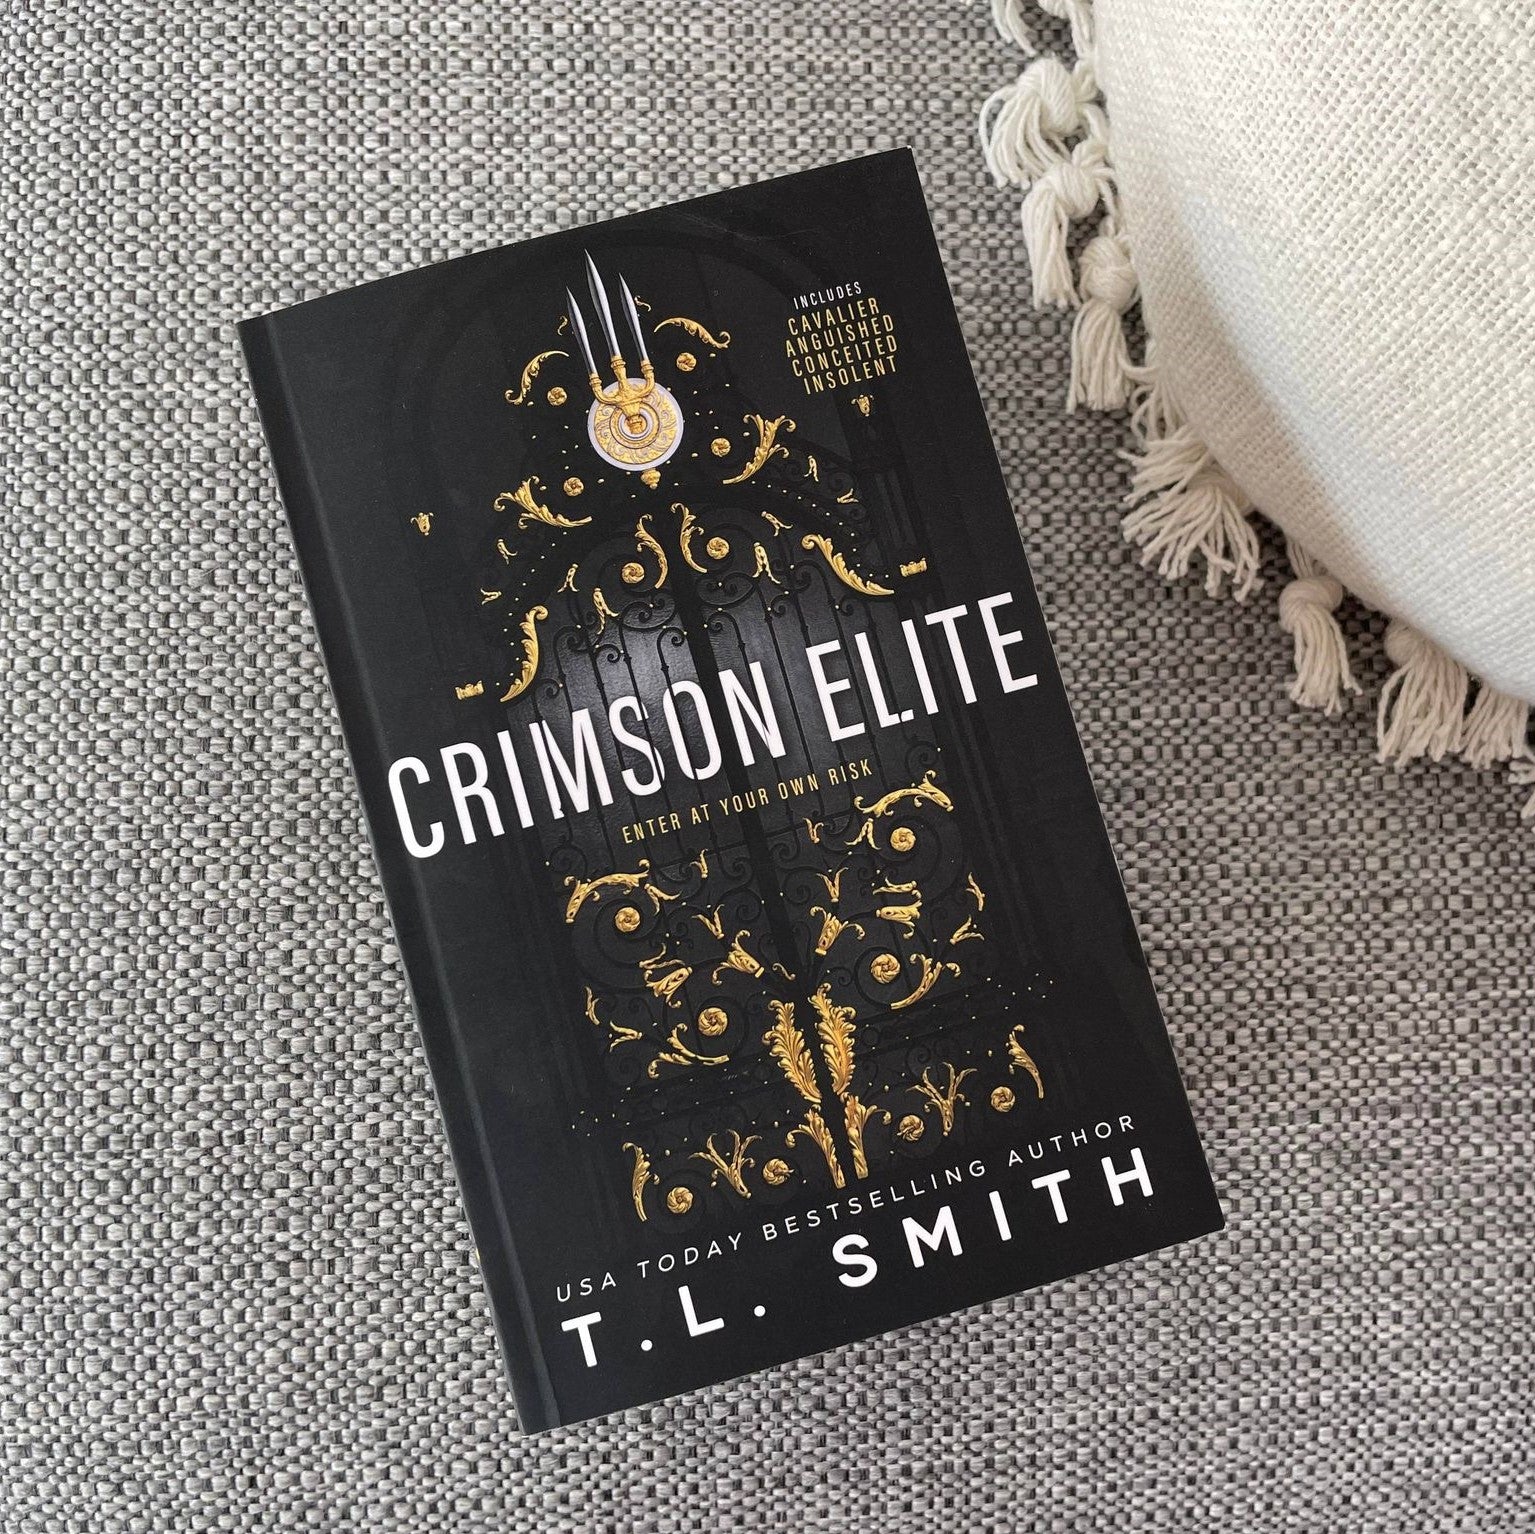 Crismson Elite by T.L. Smith